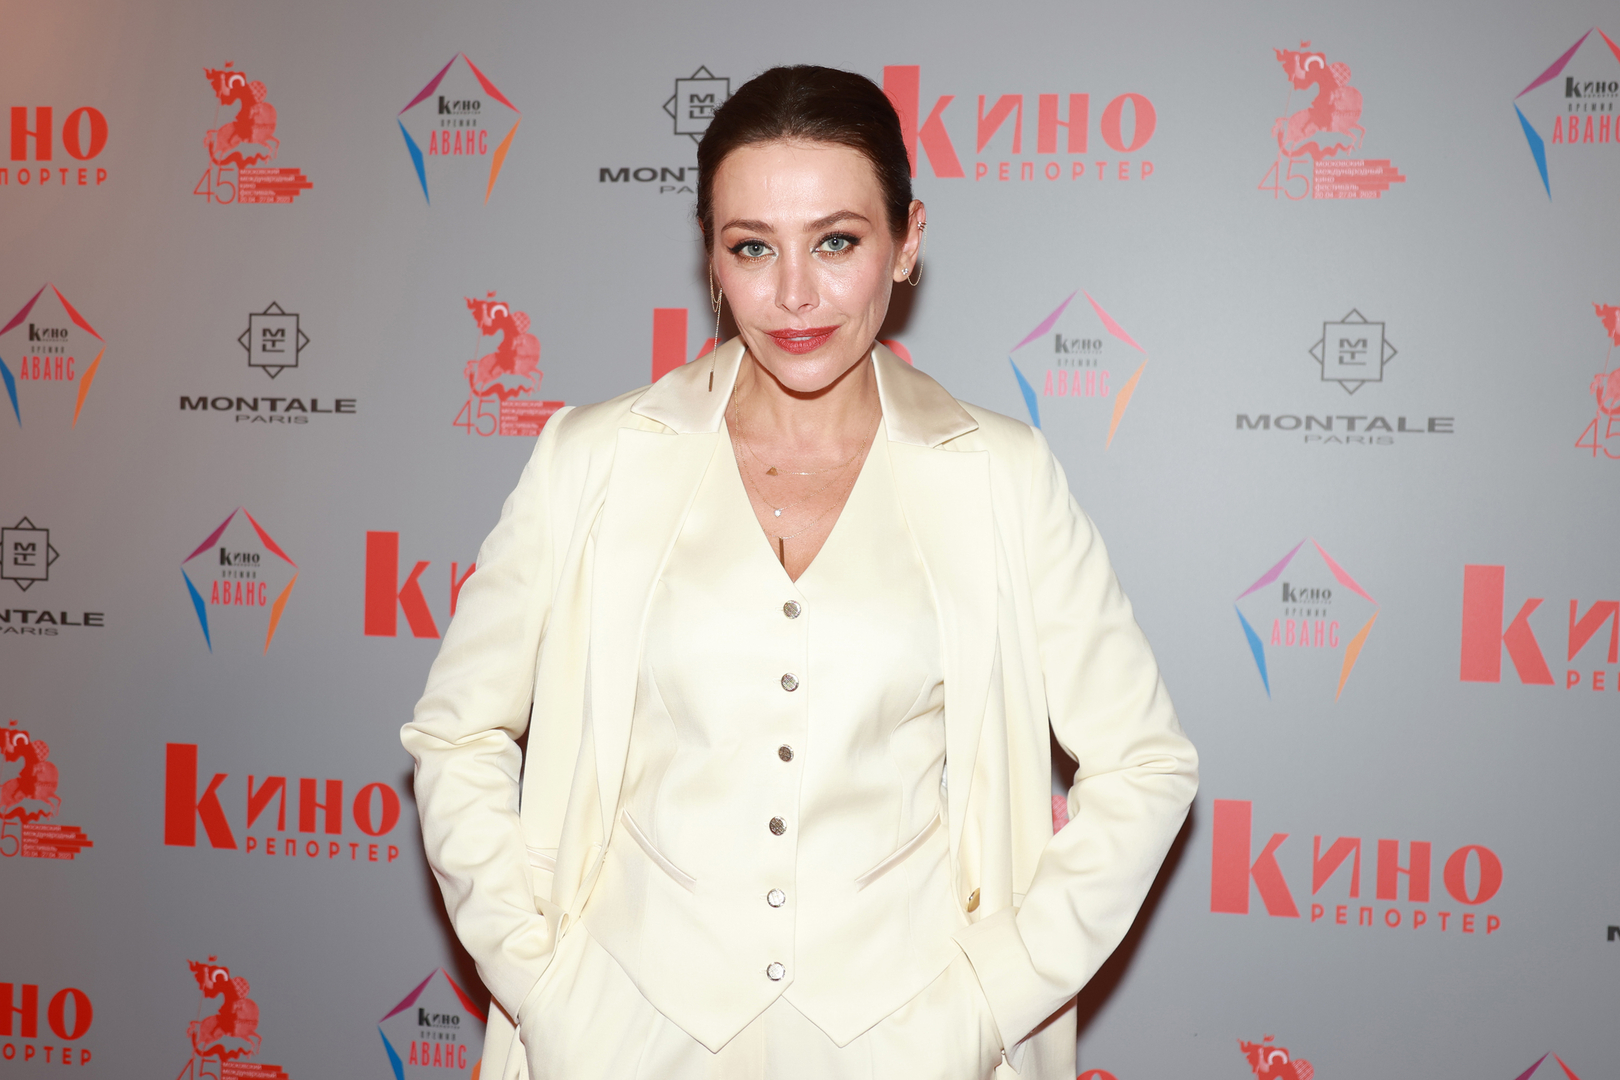 Актриса Екатерина Волкова сообщила, что дочь родила сыновей от женатого мужчины